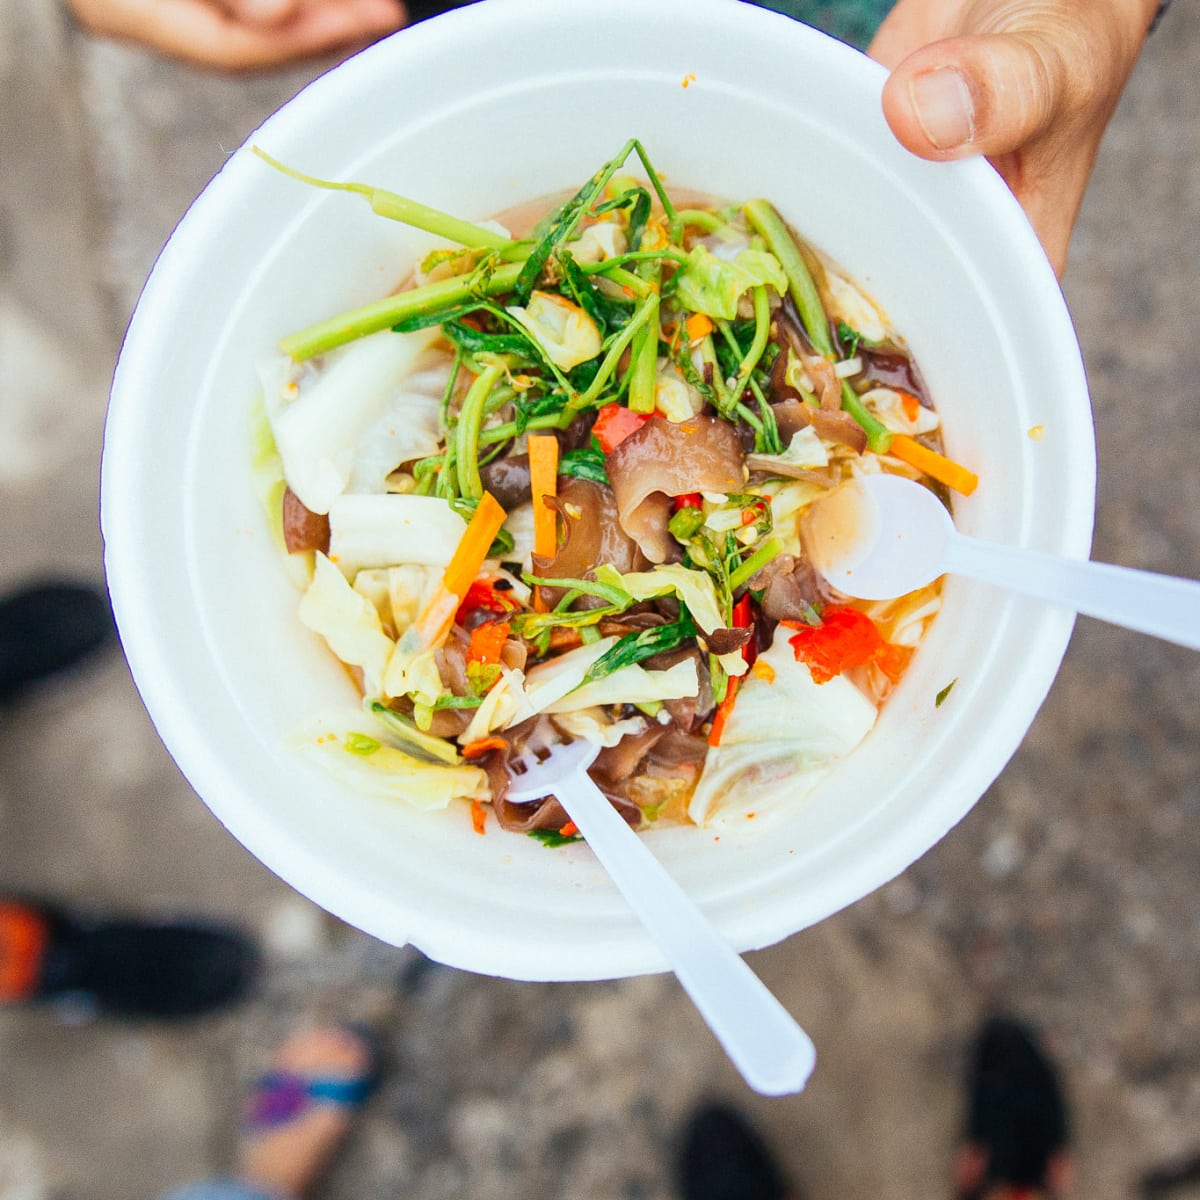 "Gordon Ramsey's Favorite Thai food" Tour - Food tour in Bangkok